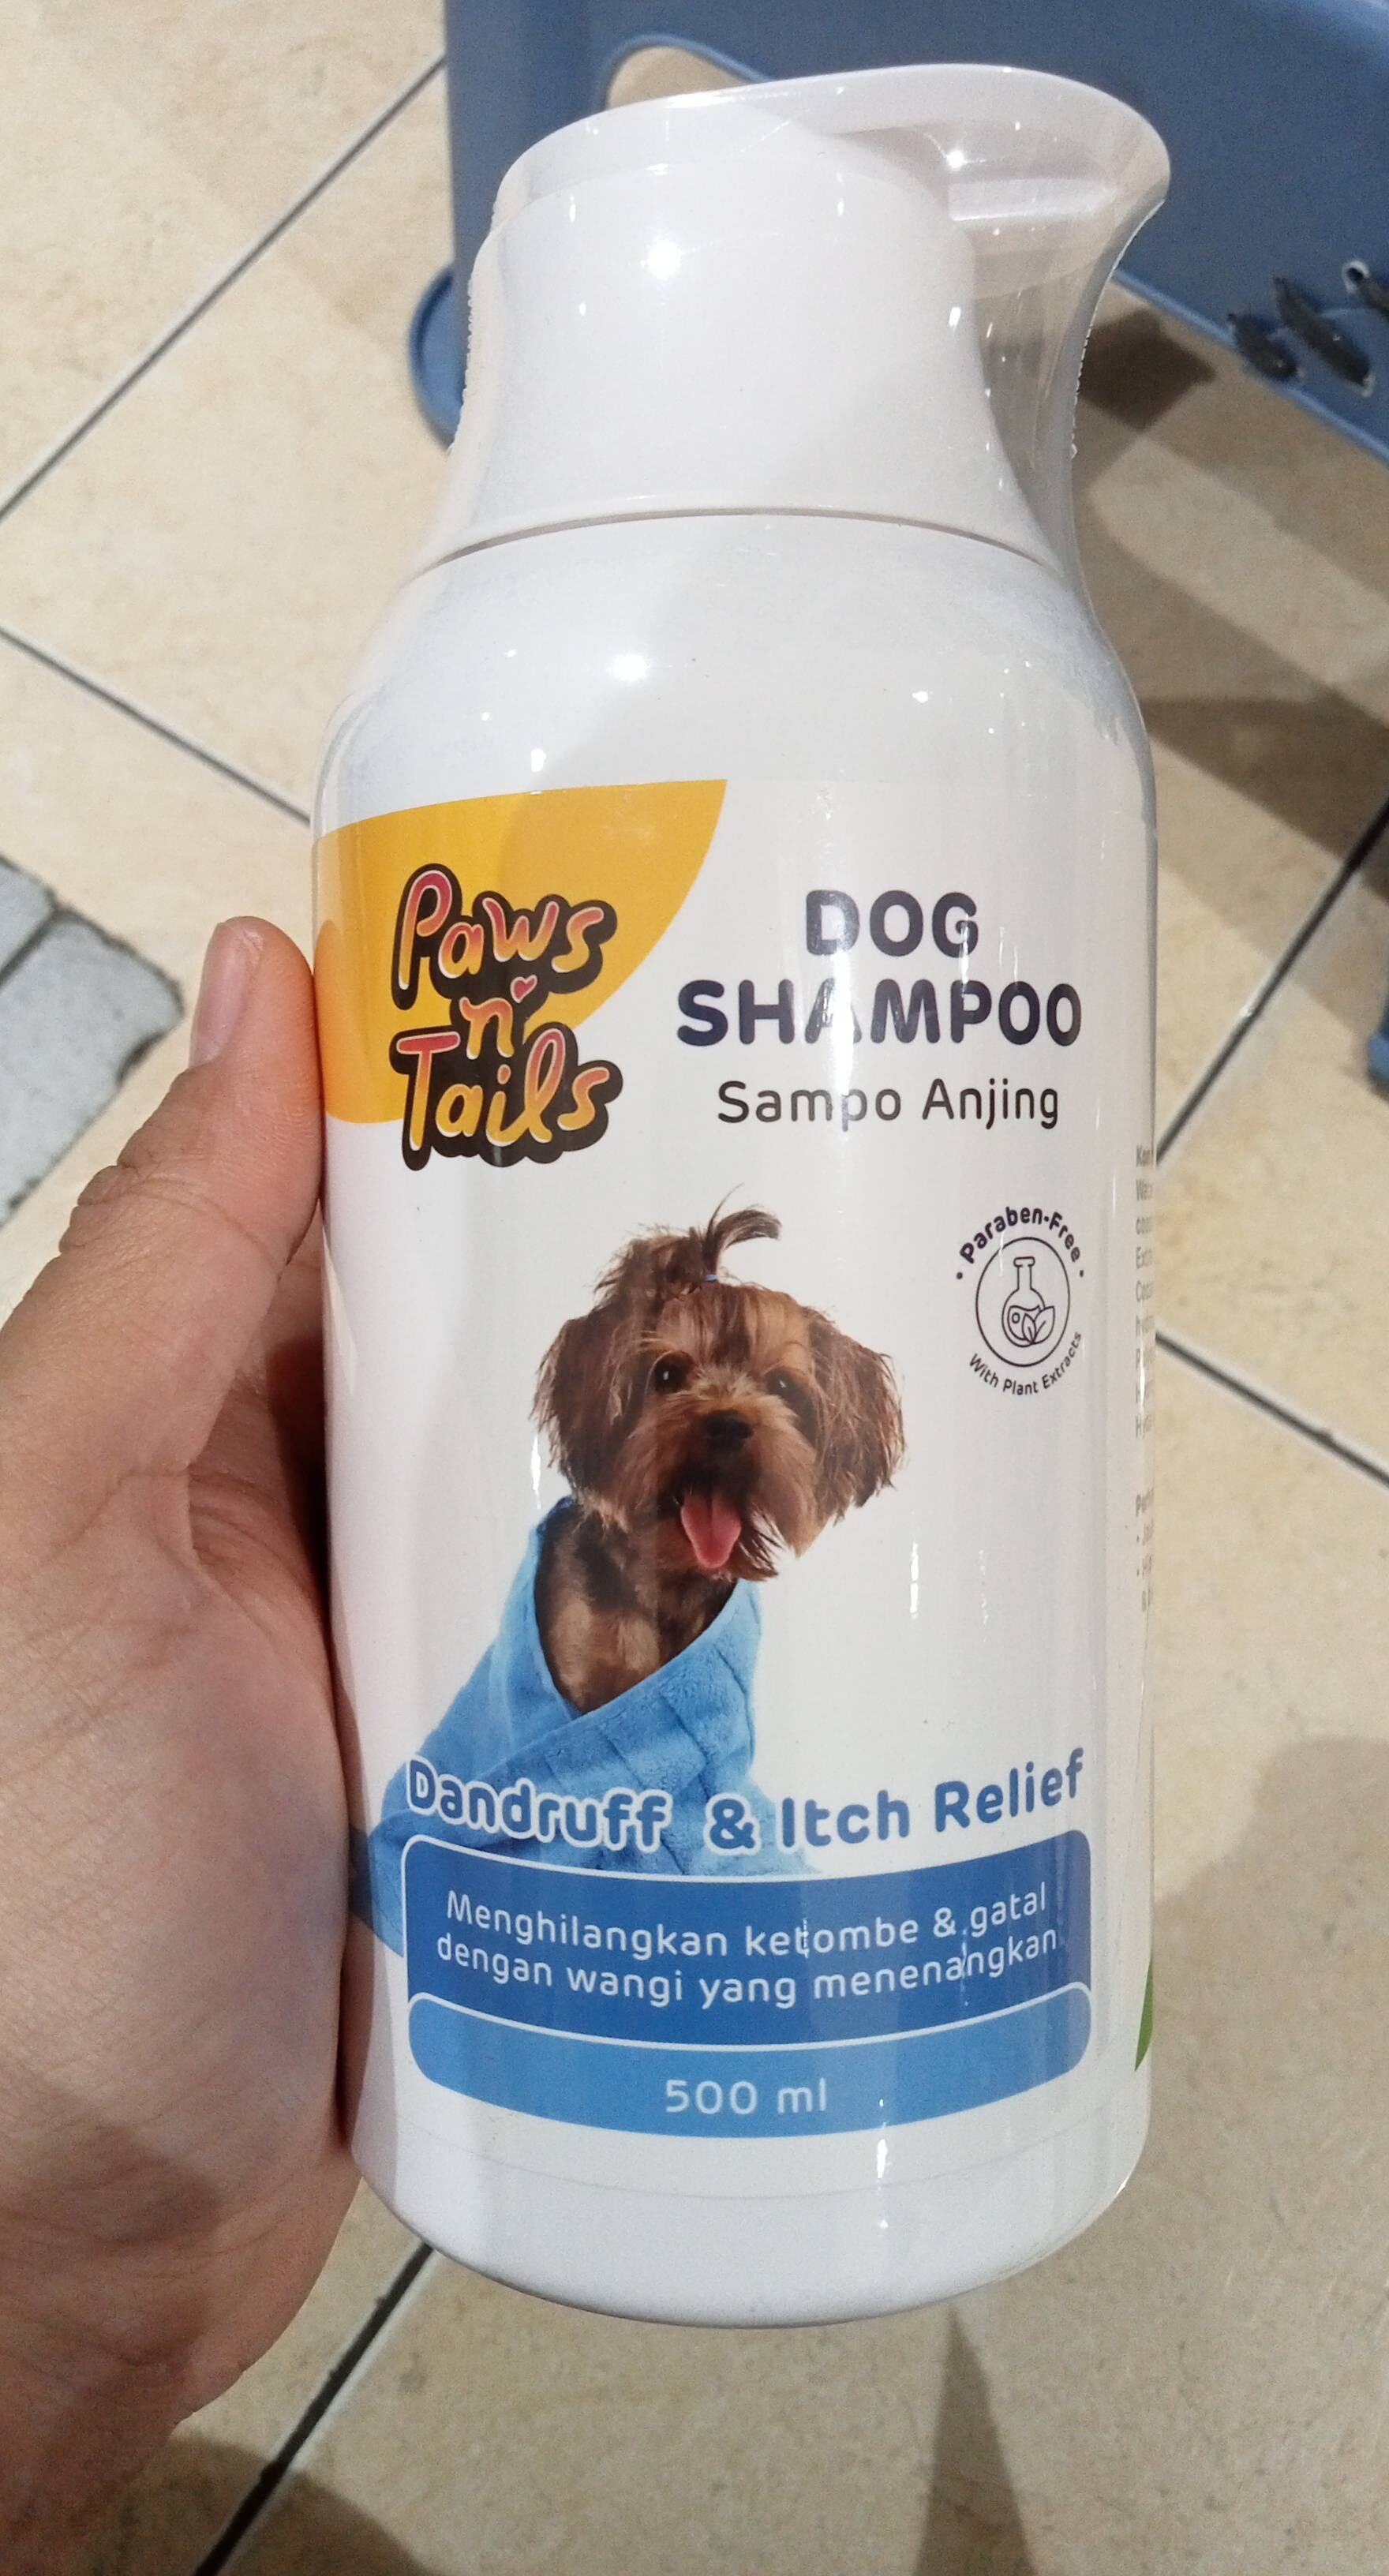 Dog shampoo anti dandruff n itch relief - Product - en